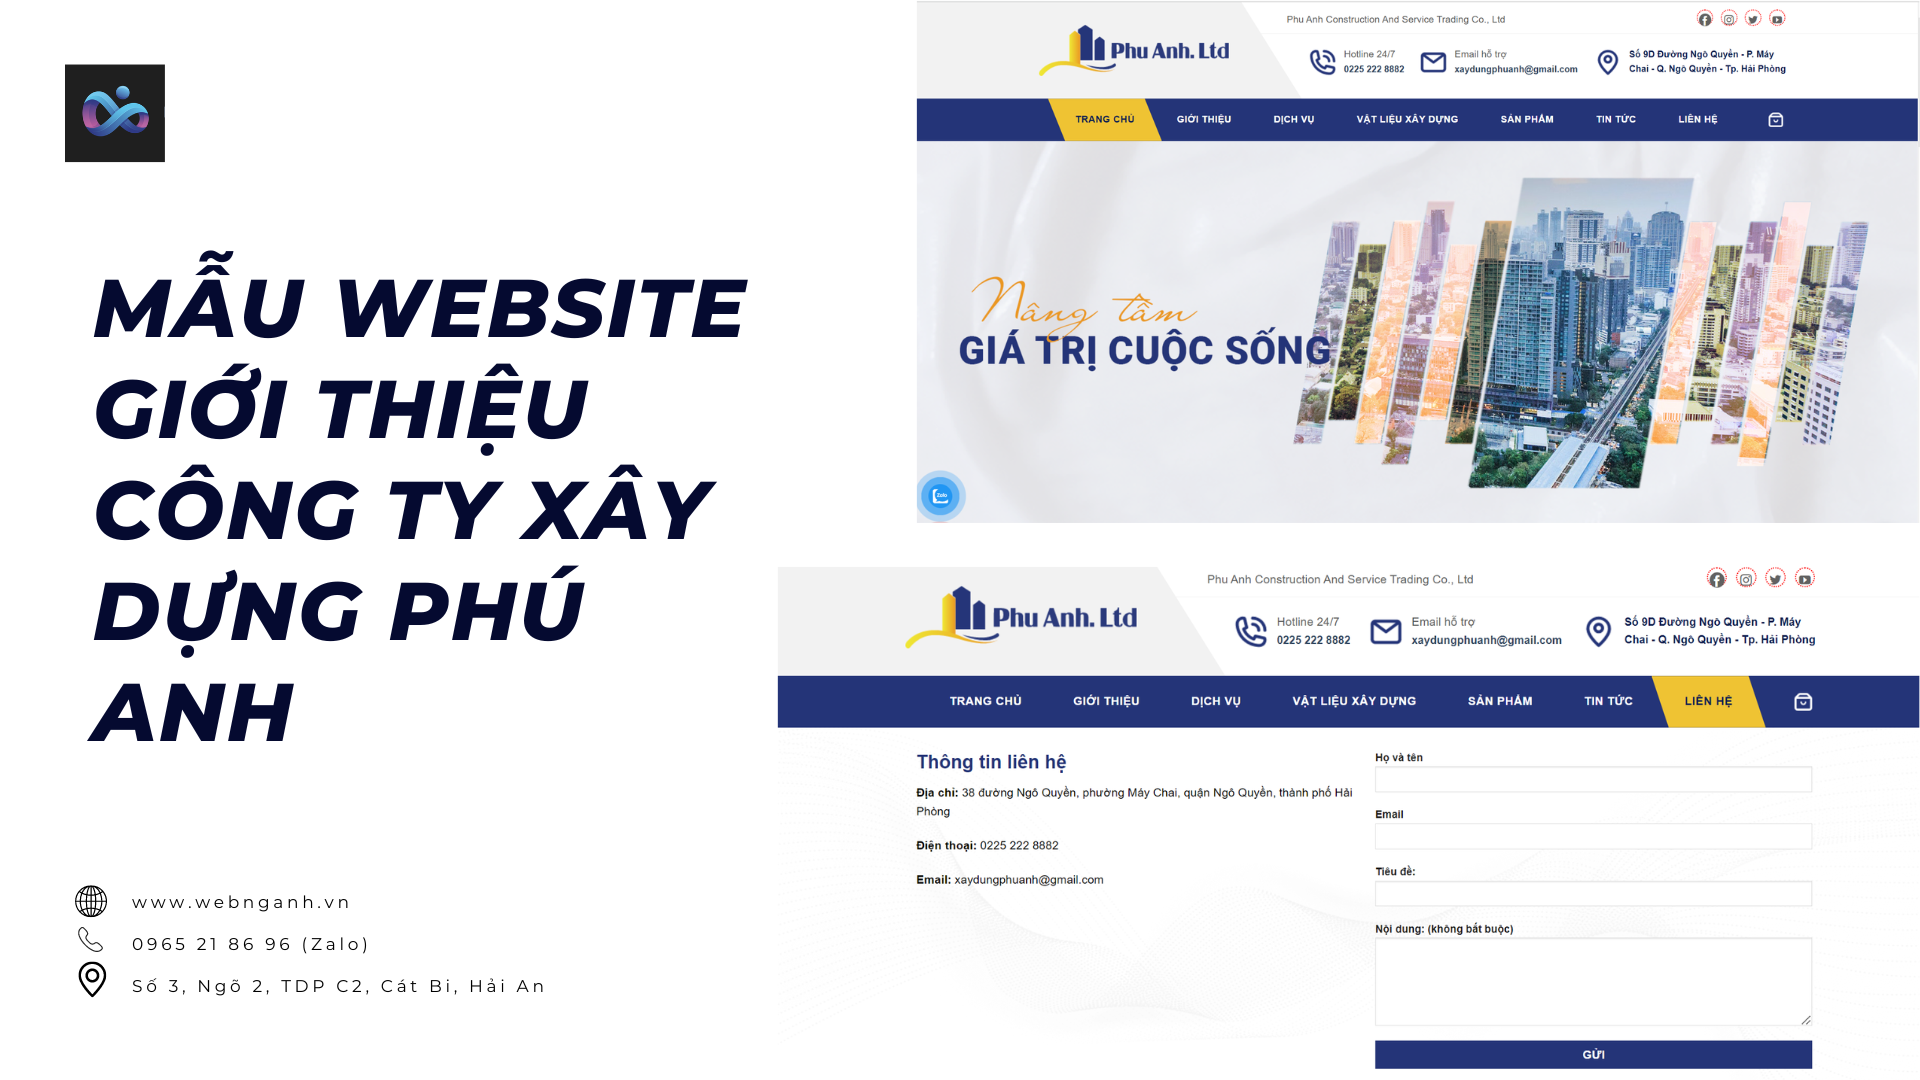 Mẫu website giới thiệu công ty xây dựng Phú Anh